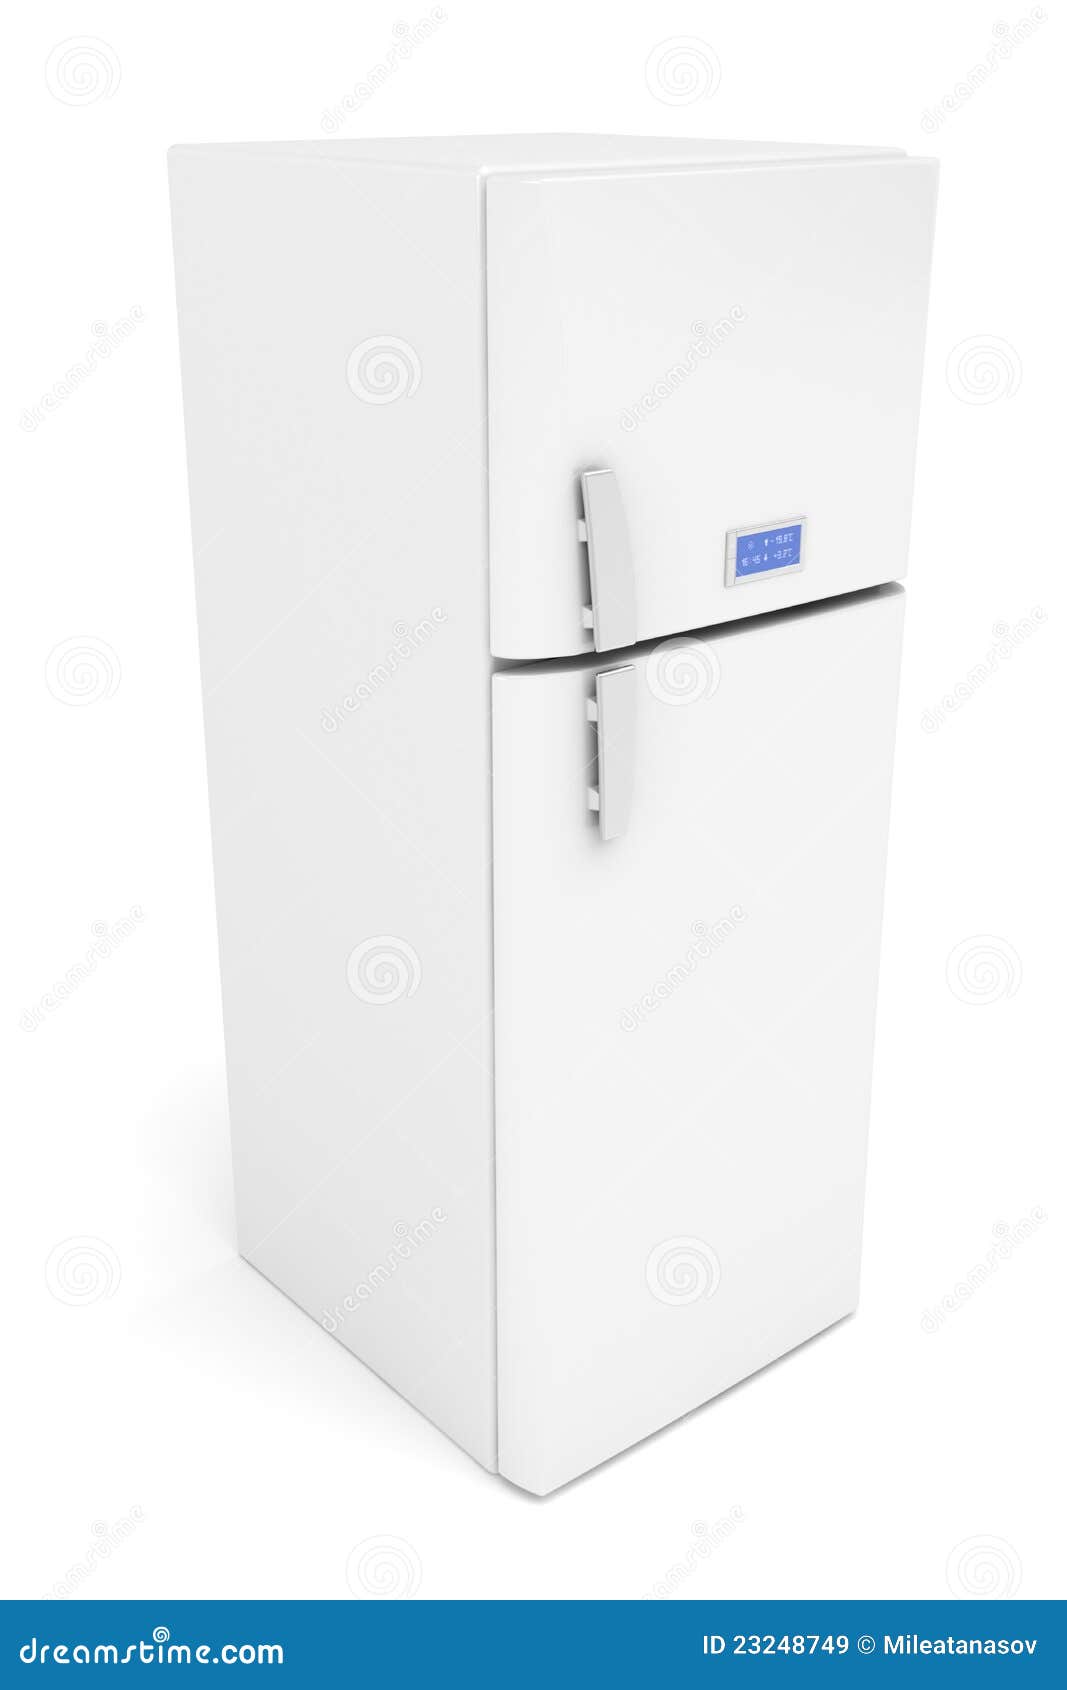 3d image of white modern fridge